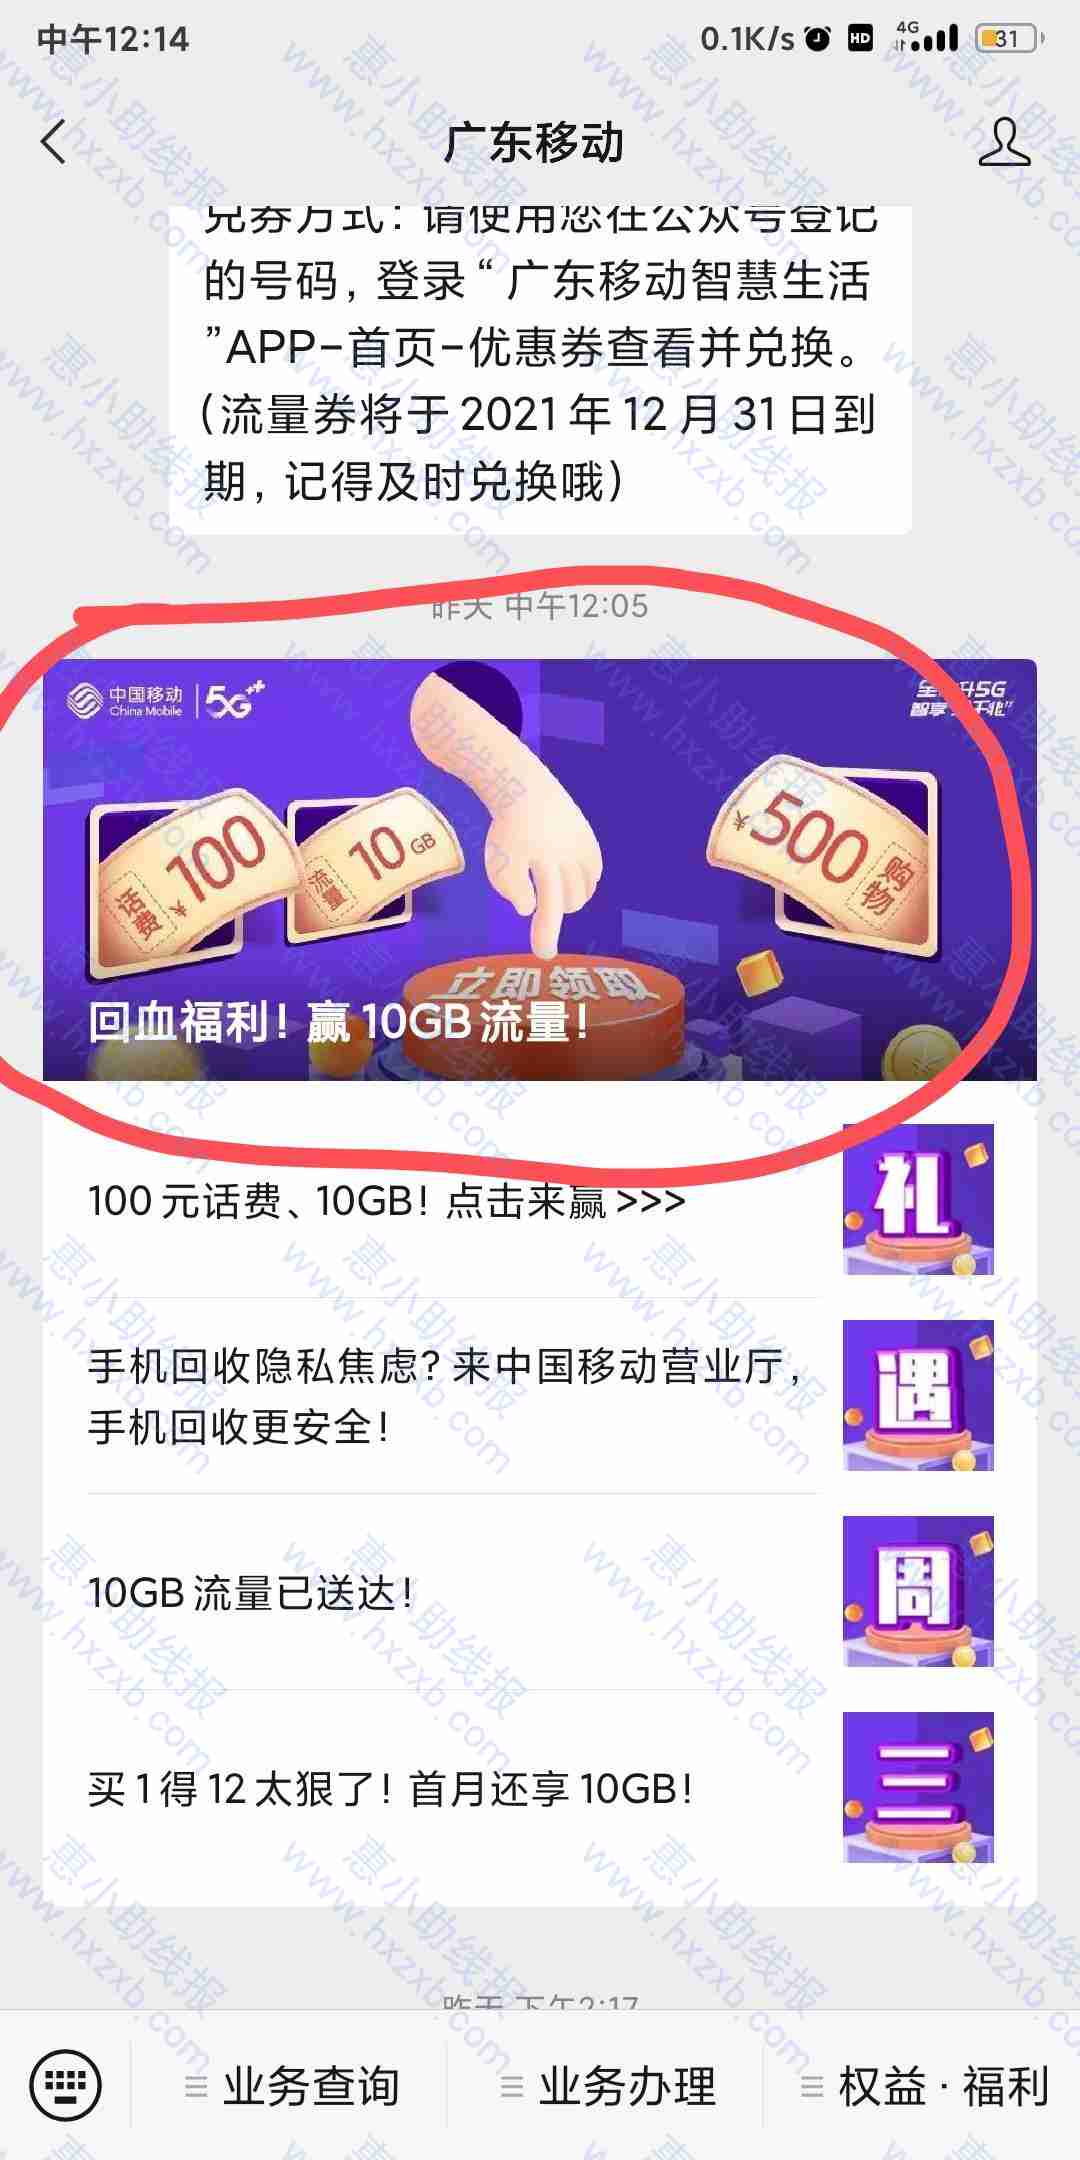 广东移动抢10G三天2元消费红包